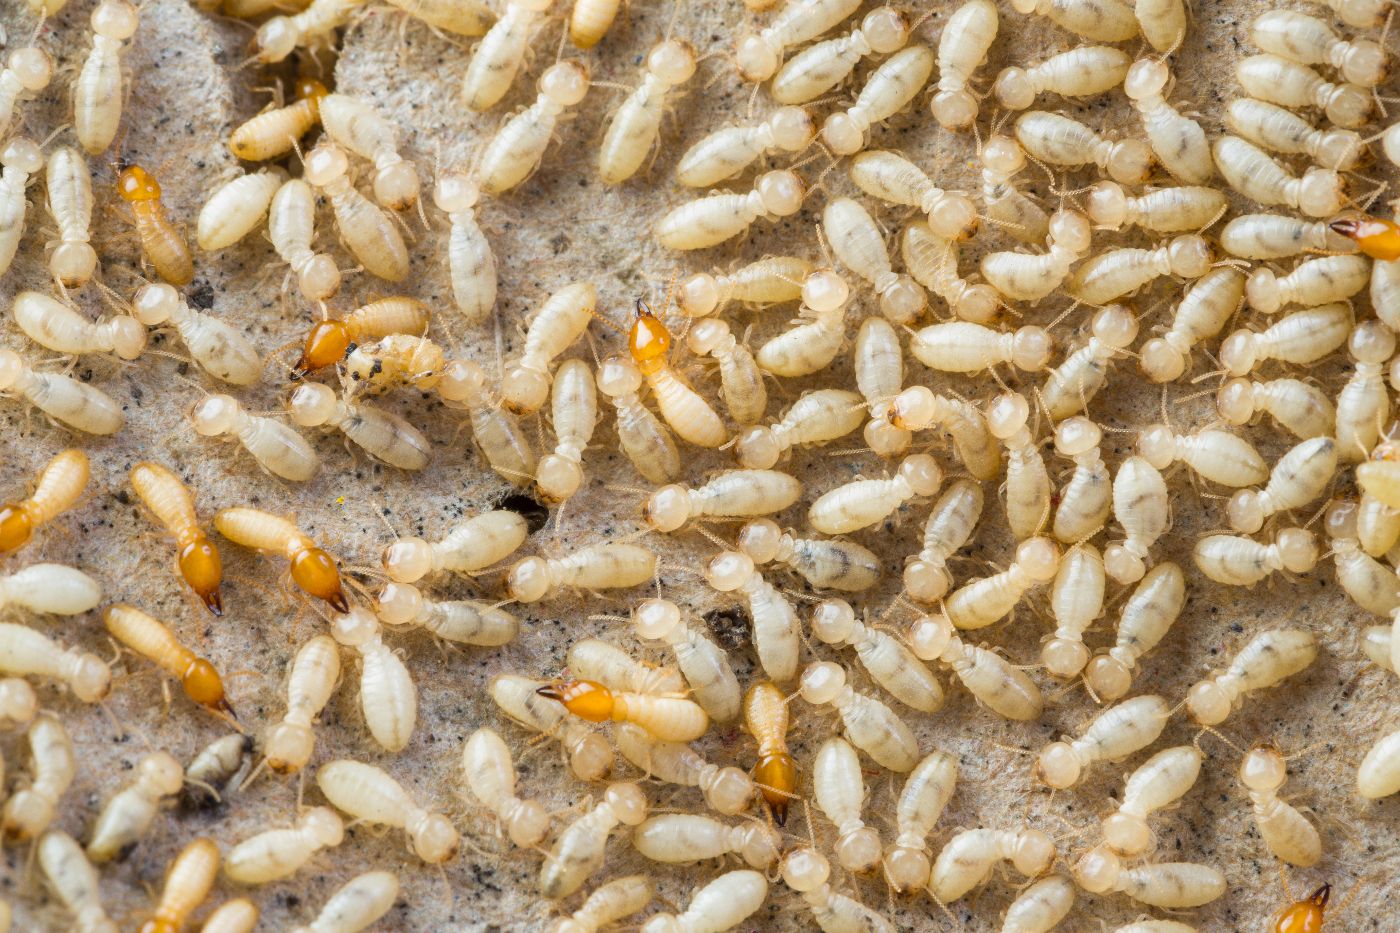 Termite Service